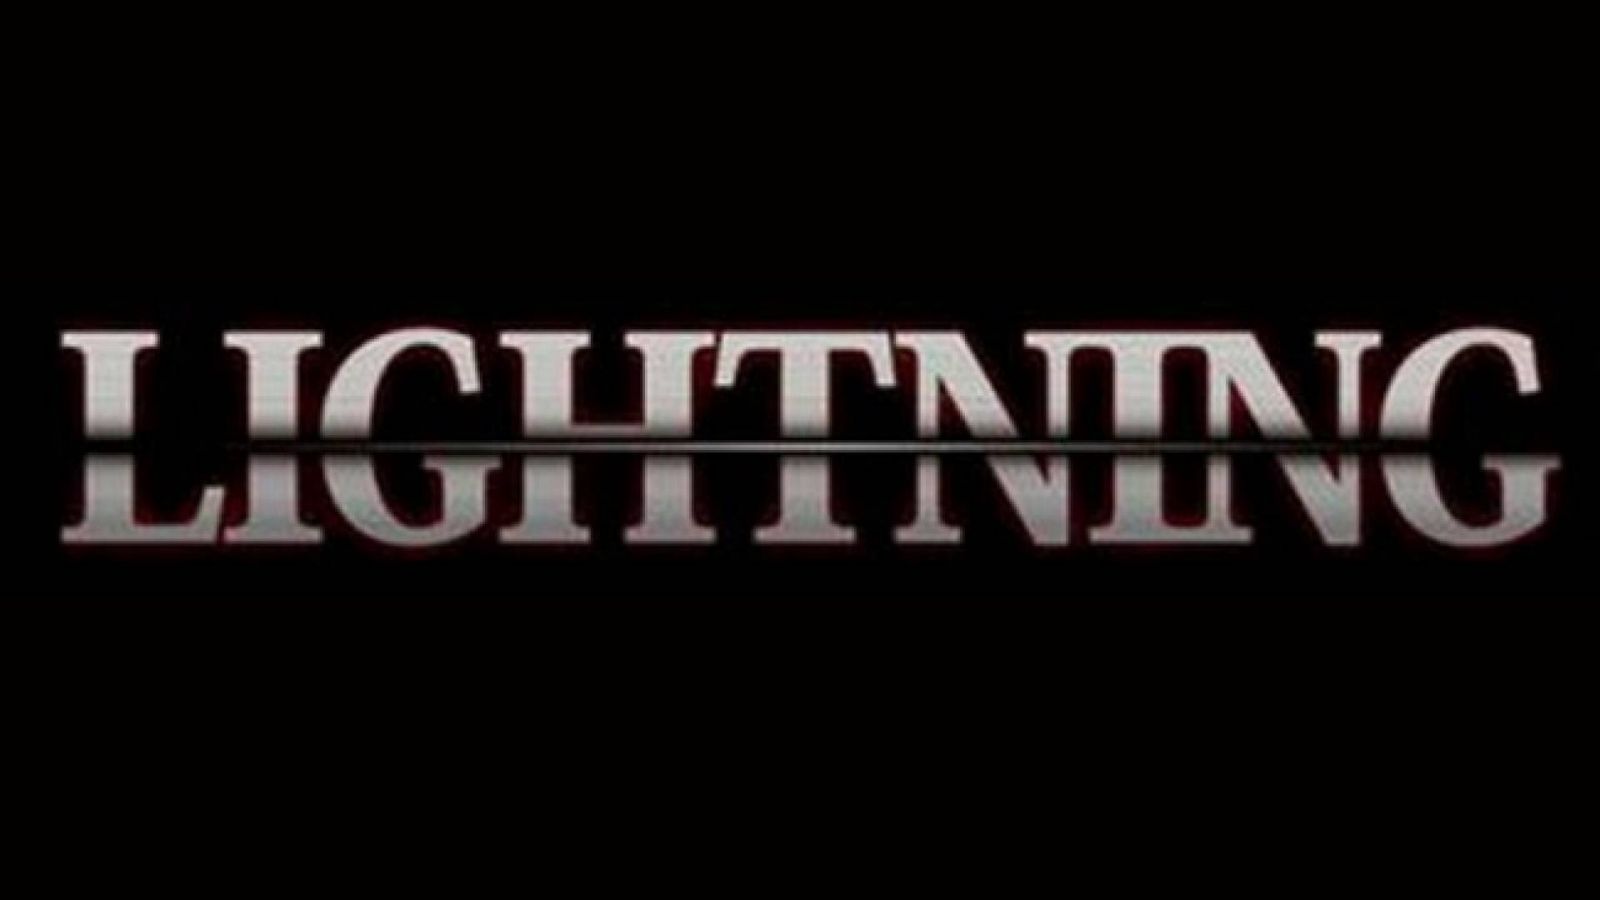 LIGHTNING anuncia nuevos integrantes © LIGHTNING. All Rights Reserved.